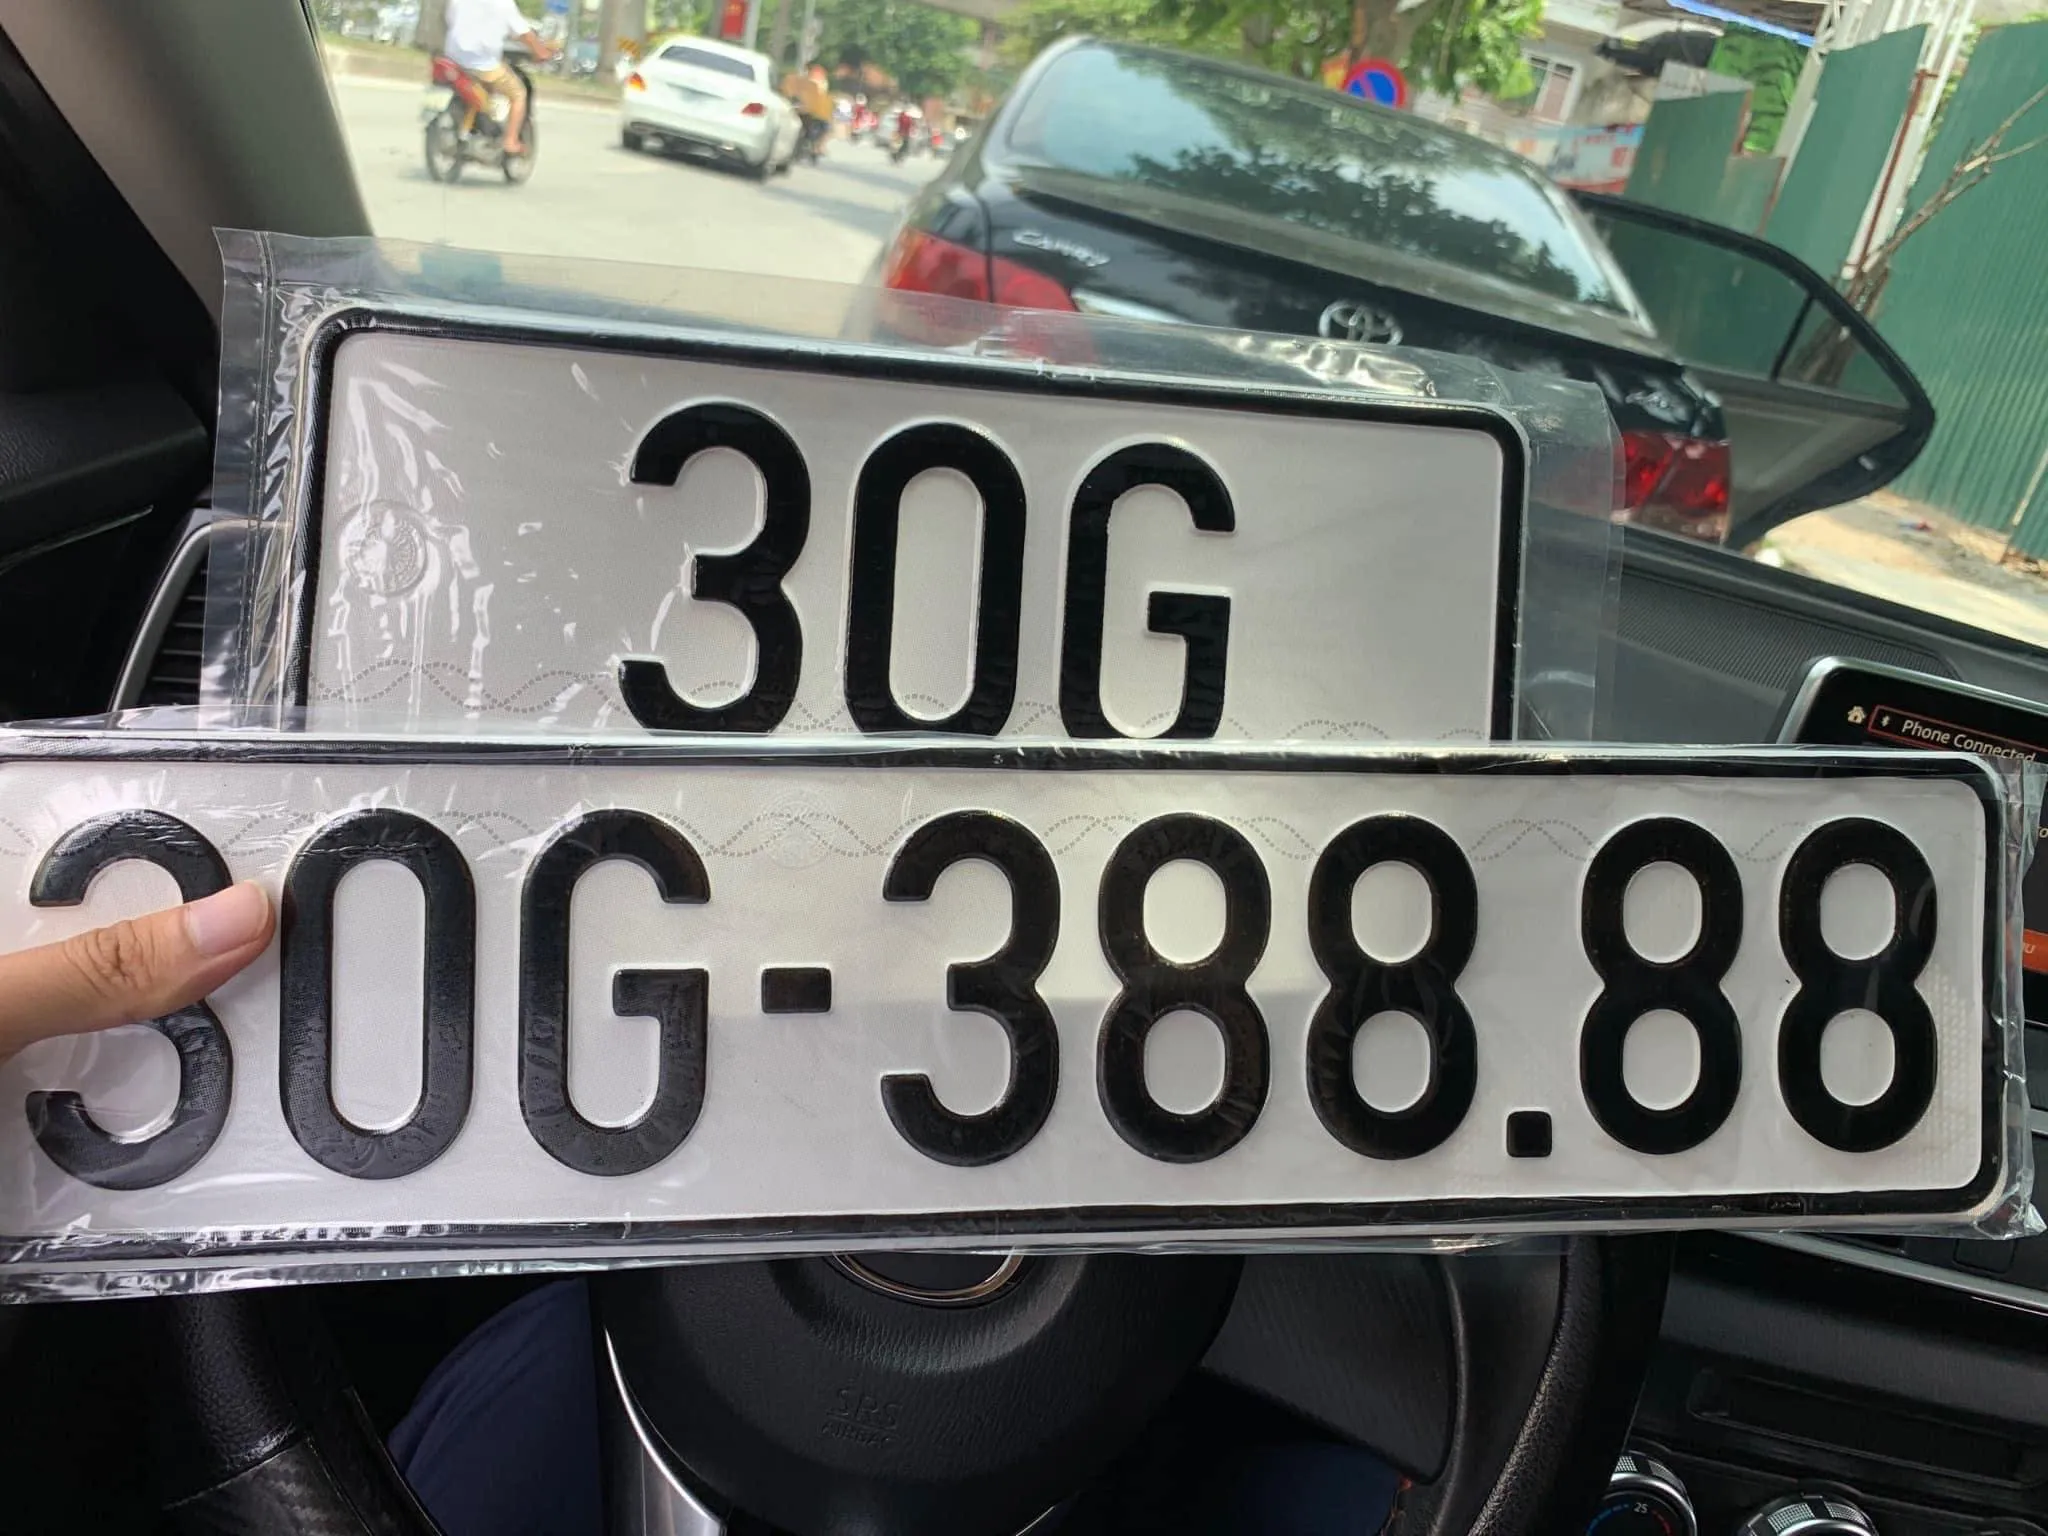 pilot auction of automobiles’ number plates